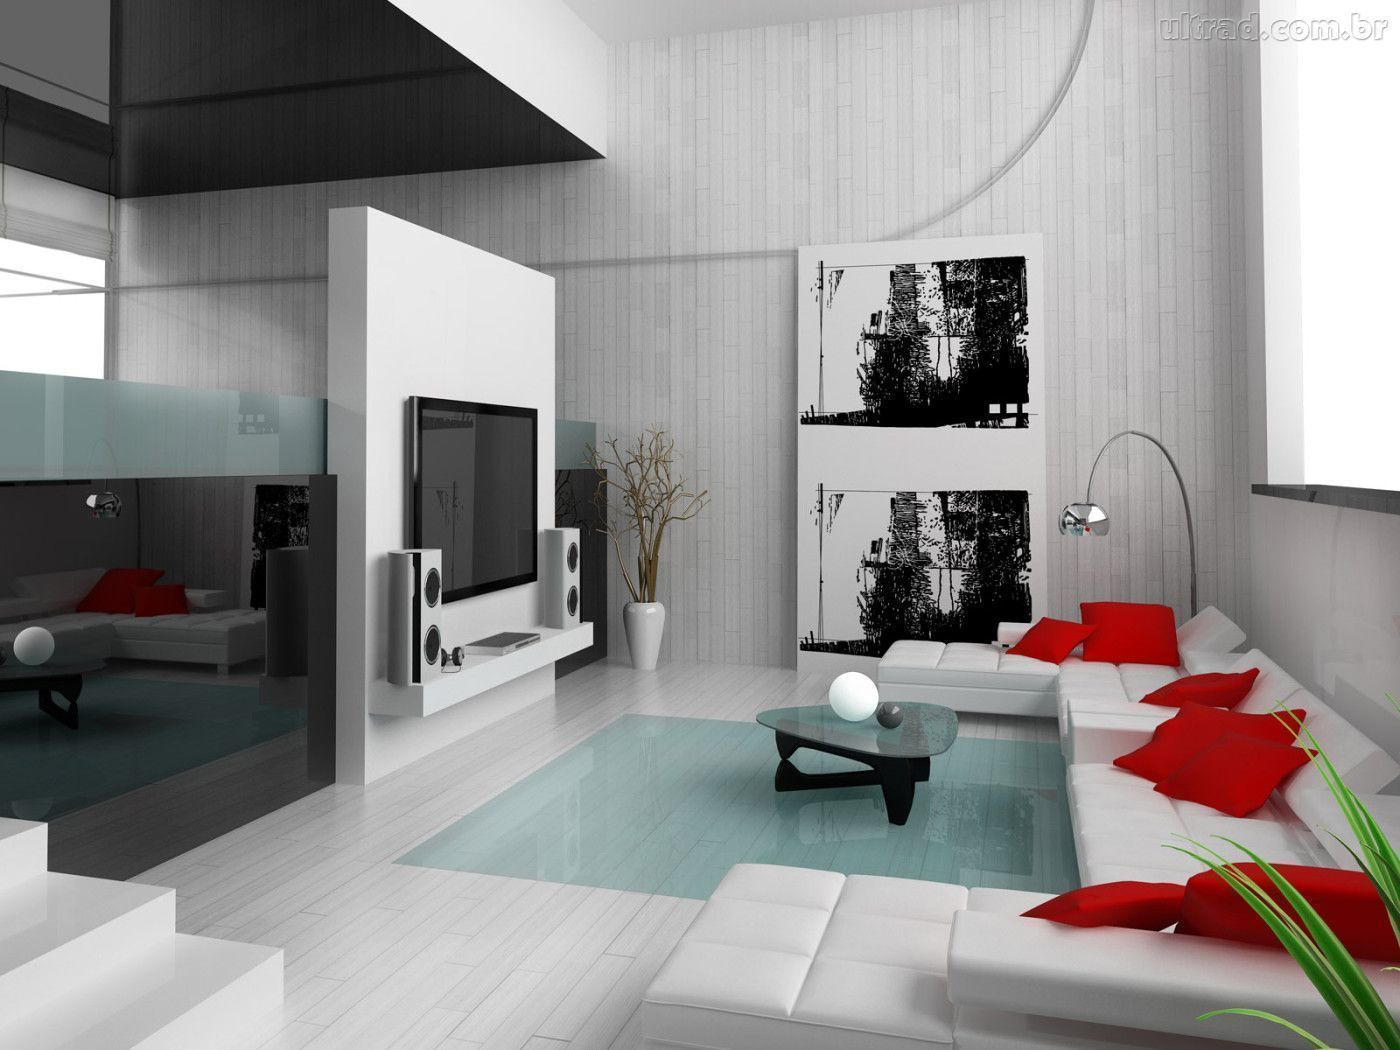 Dekorasyon - Tadilat - Tasarım - İç Mimarlık, Dekorasyontadilat Dekorasyontadilat Living room